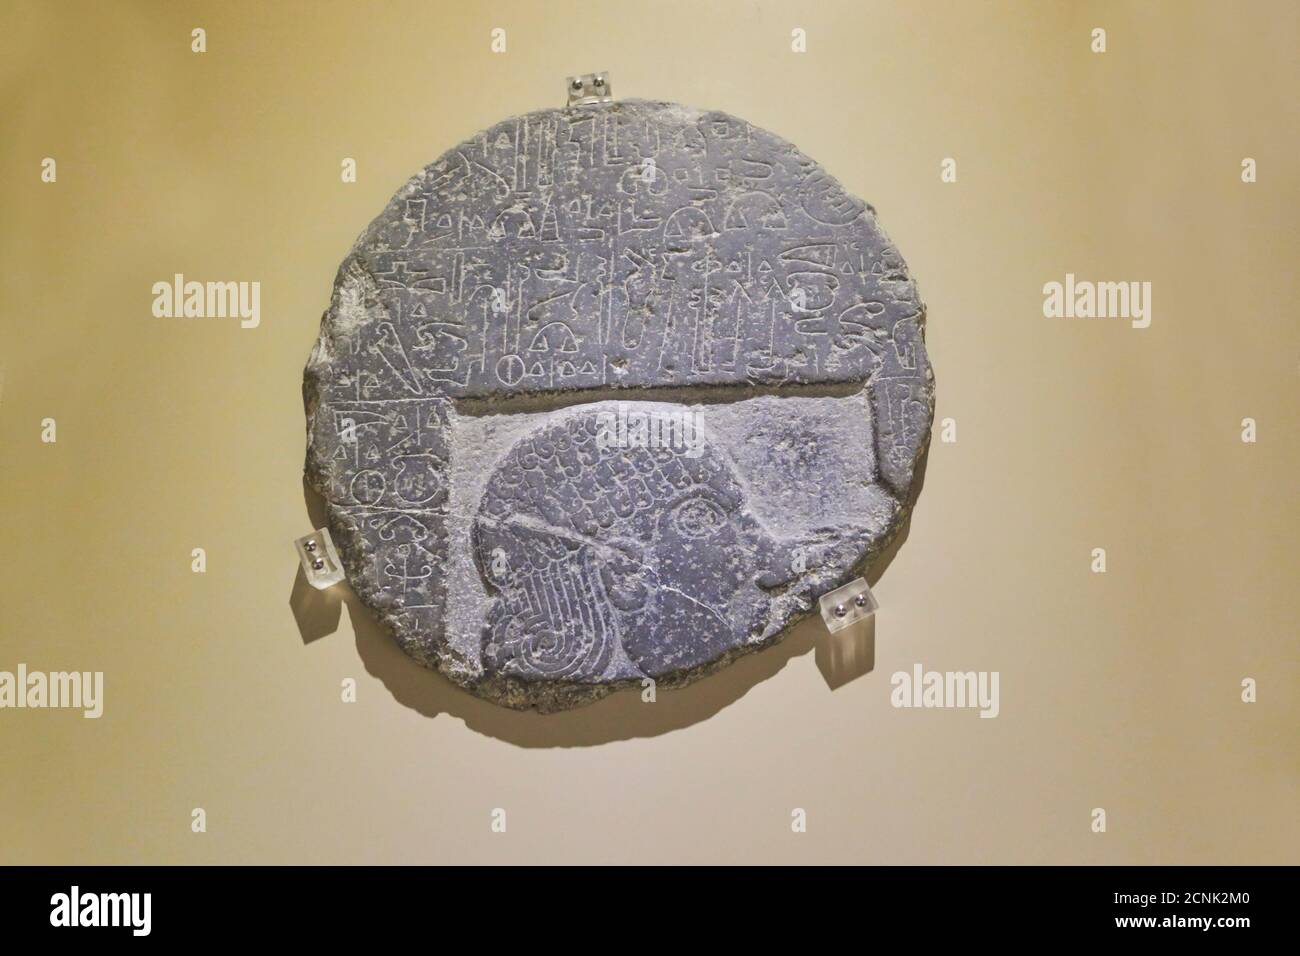 Steininschrift von Saruvanis, König von Nahid. 9. Jahrhundert B.C. Museum der anatolischen Zivilisationen, Anadolu Medeniyetleri Muzesi. Ankara. Türkei Stockfoto